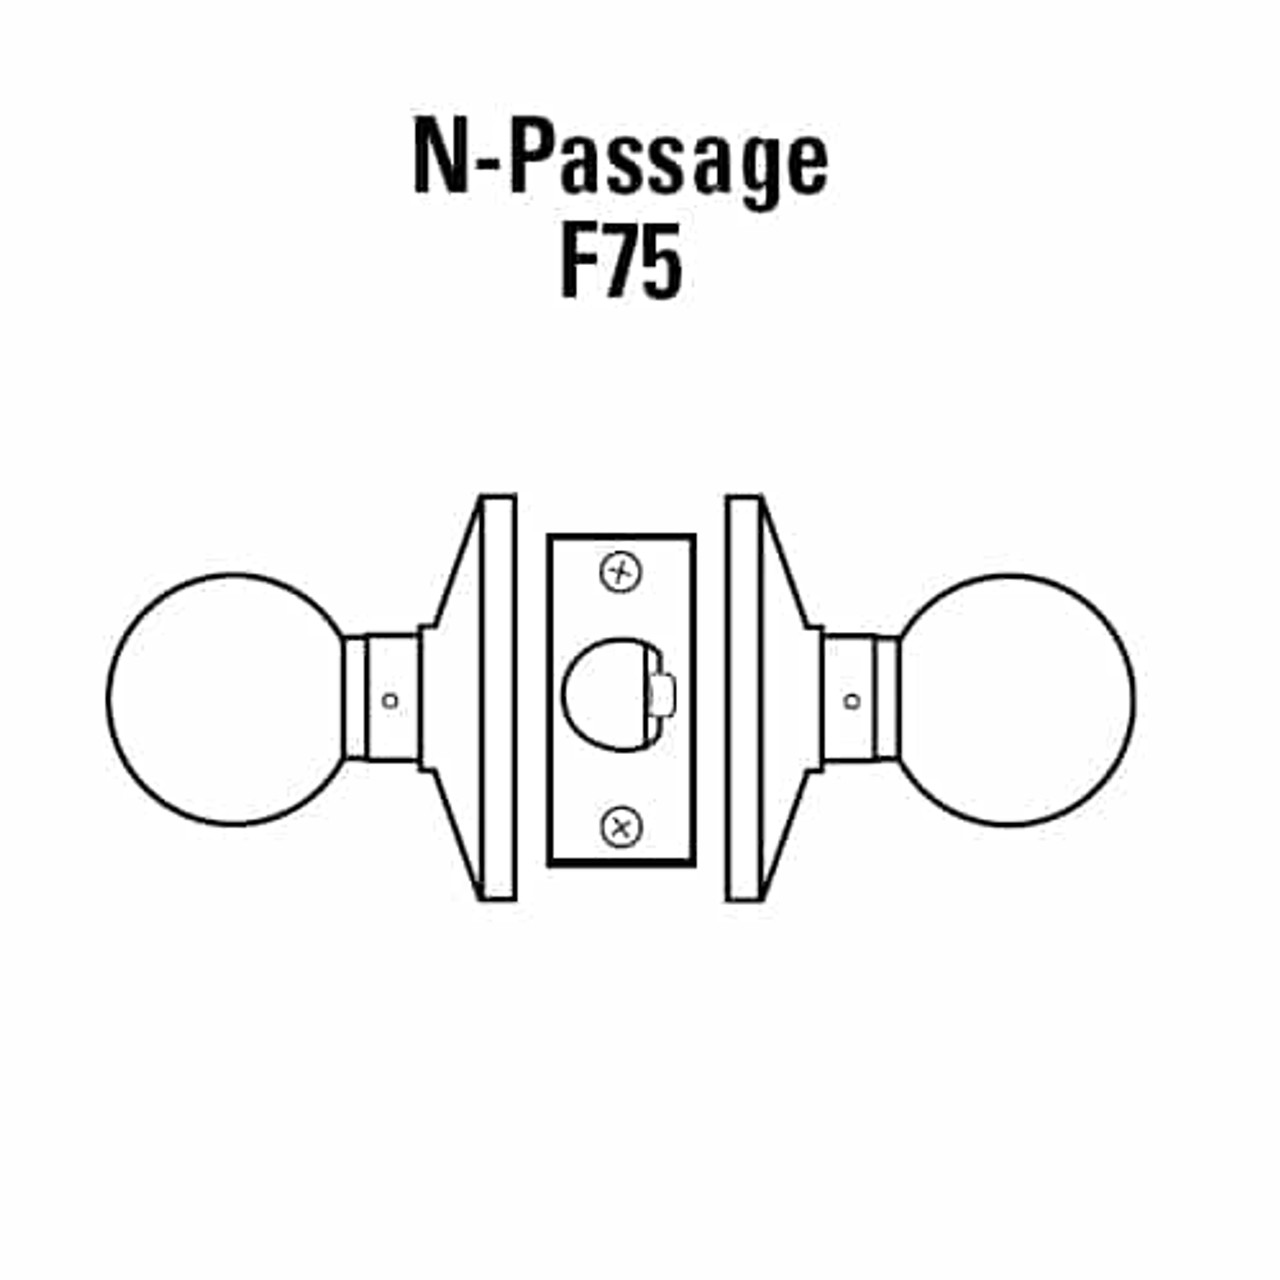 6K30N4DSTK606 Best 6K Series Passage Medium Duty Cylindrical Knob Locks with Round Style in Satin Brass